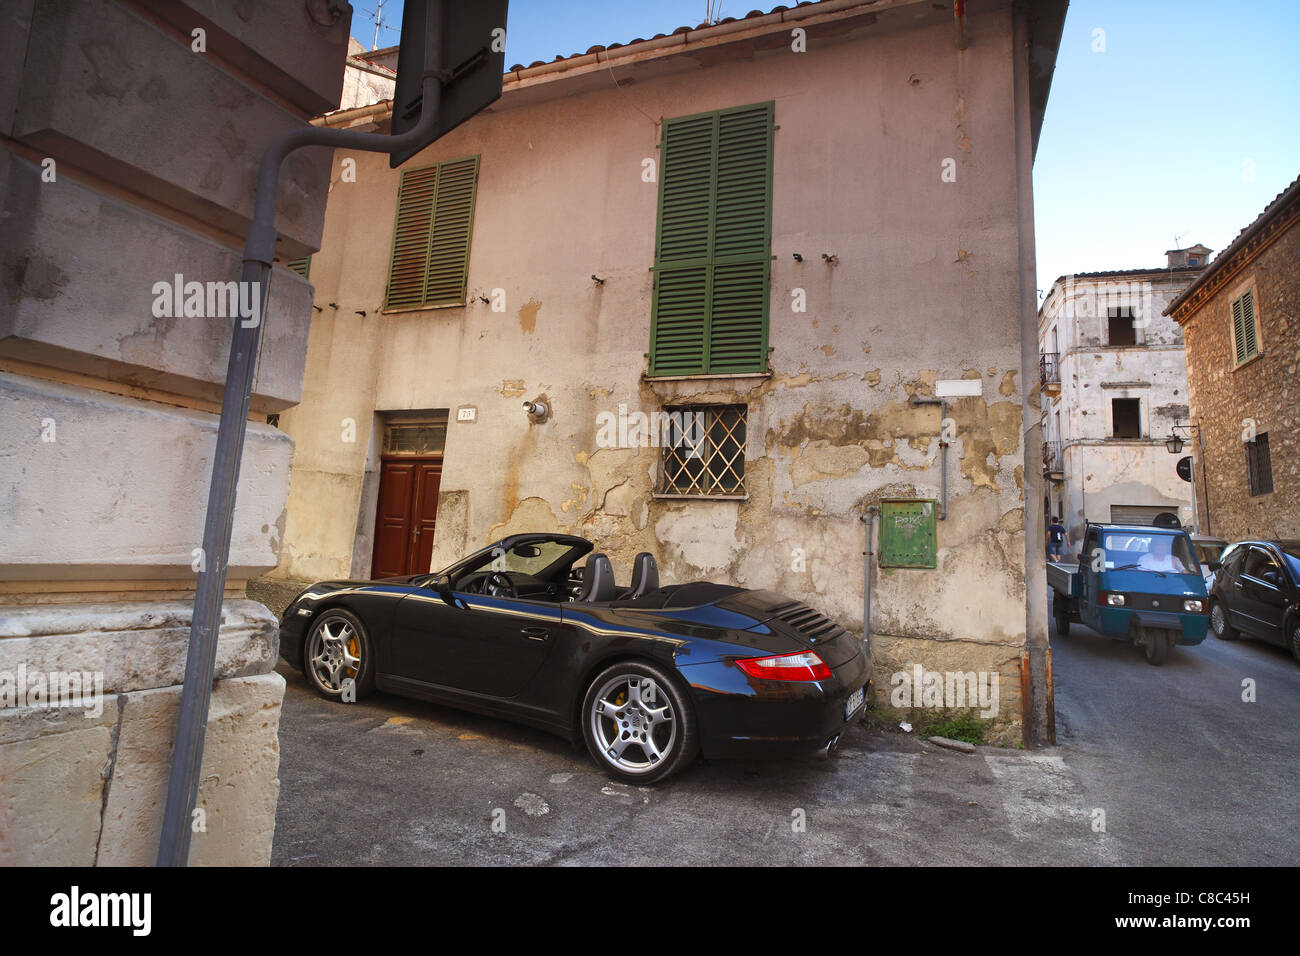 Une Porsche garée sur une rue latérale à Guardiagrele dans les Abruzzes, en Italie. Banque D'Images